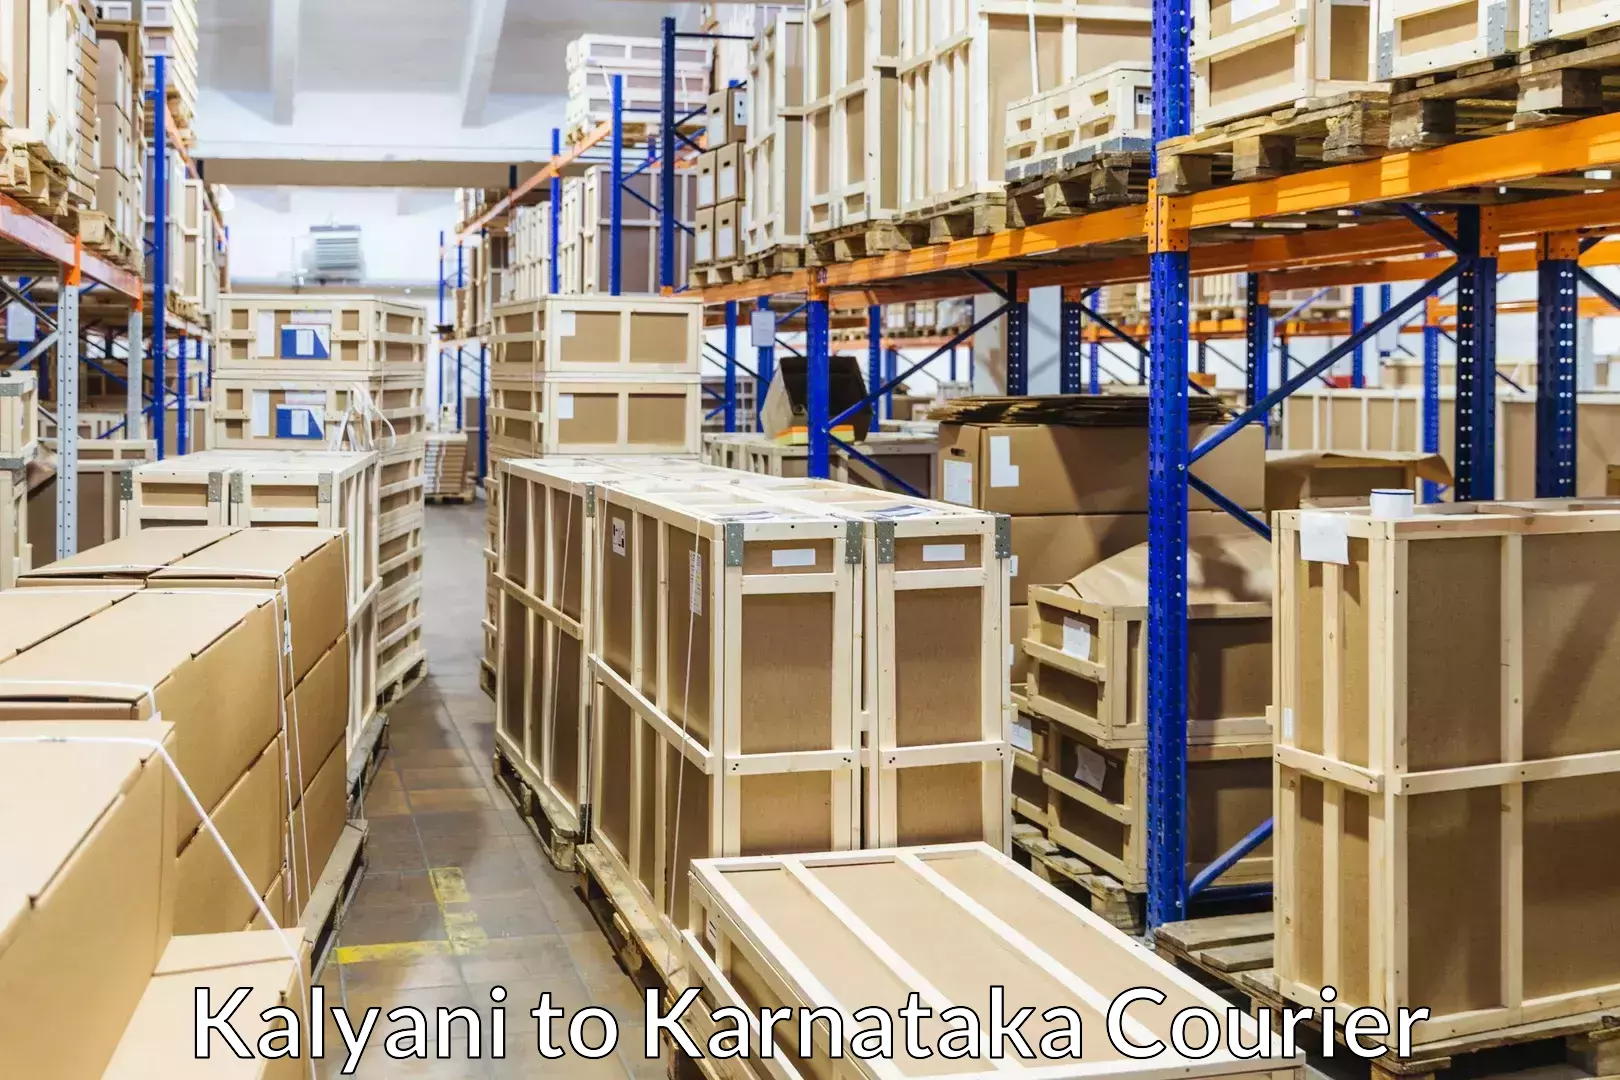 Professional packing and transport Kalyani to Karnataka